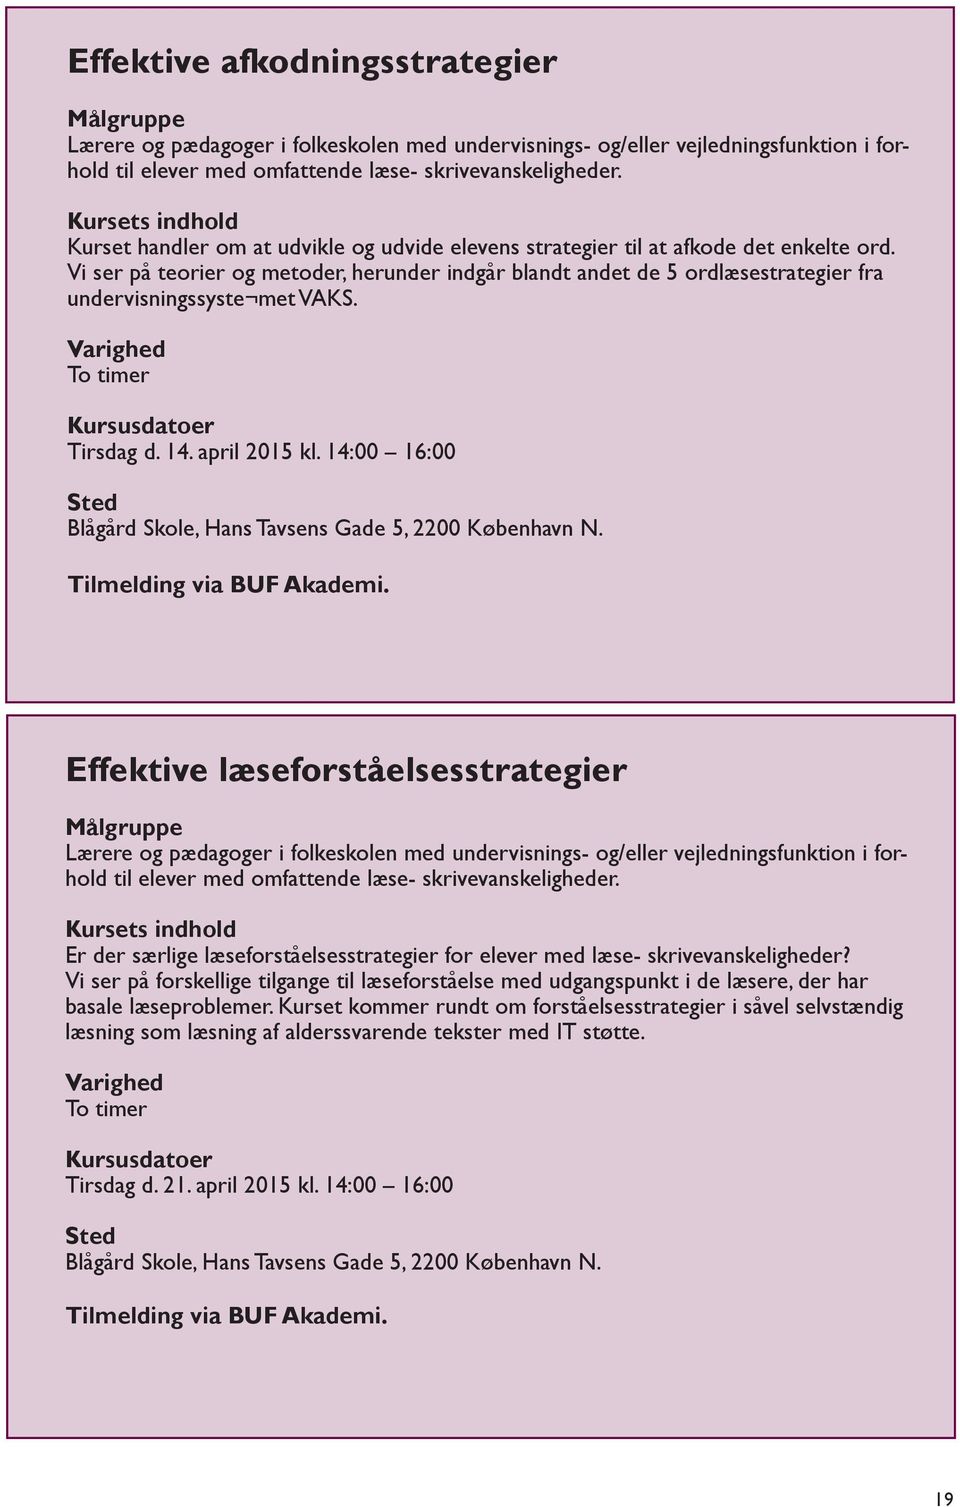 Kursus- rådgivningskatalog. for kompetencecentrene i Københavns Kommune - PDF Free Download